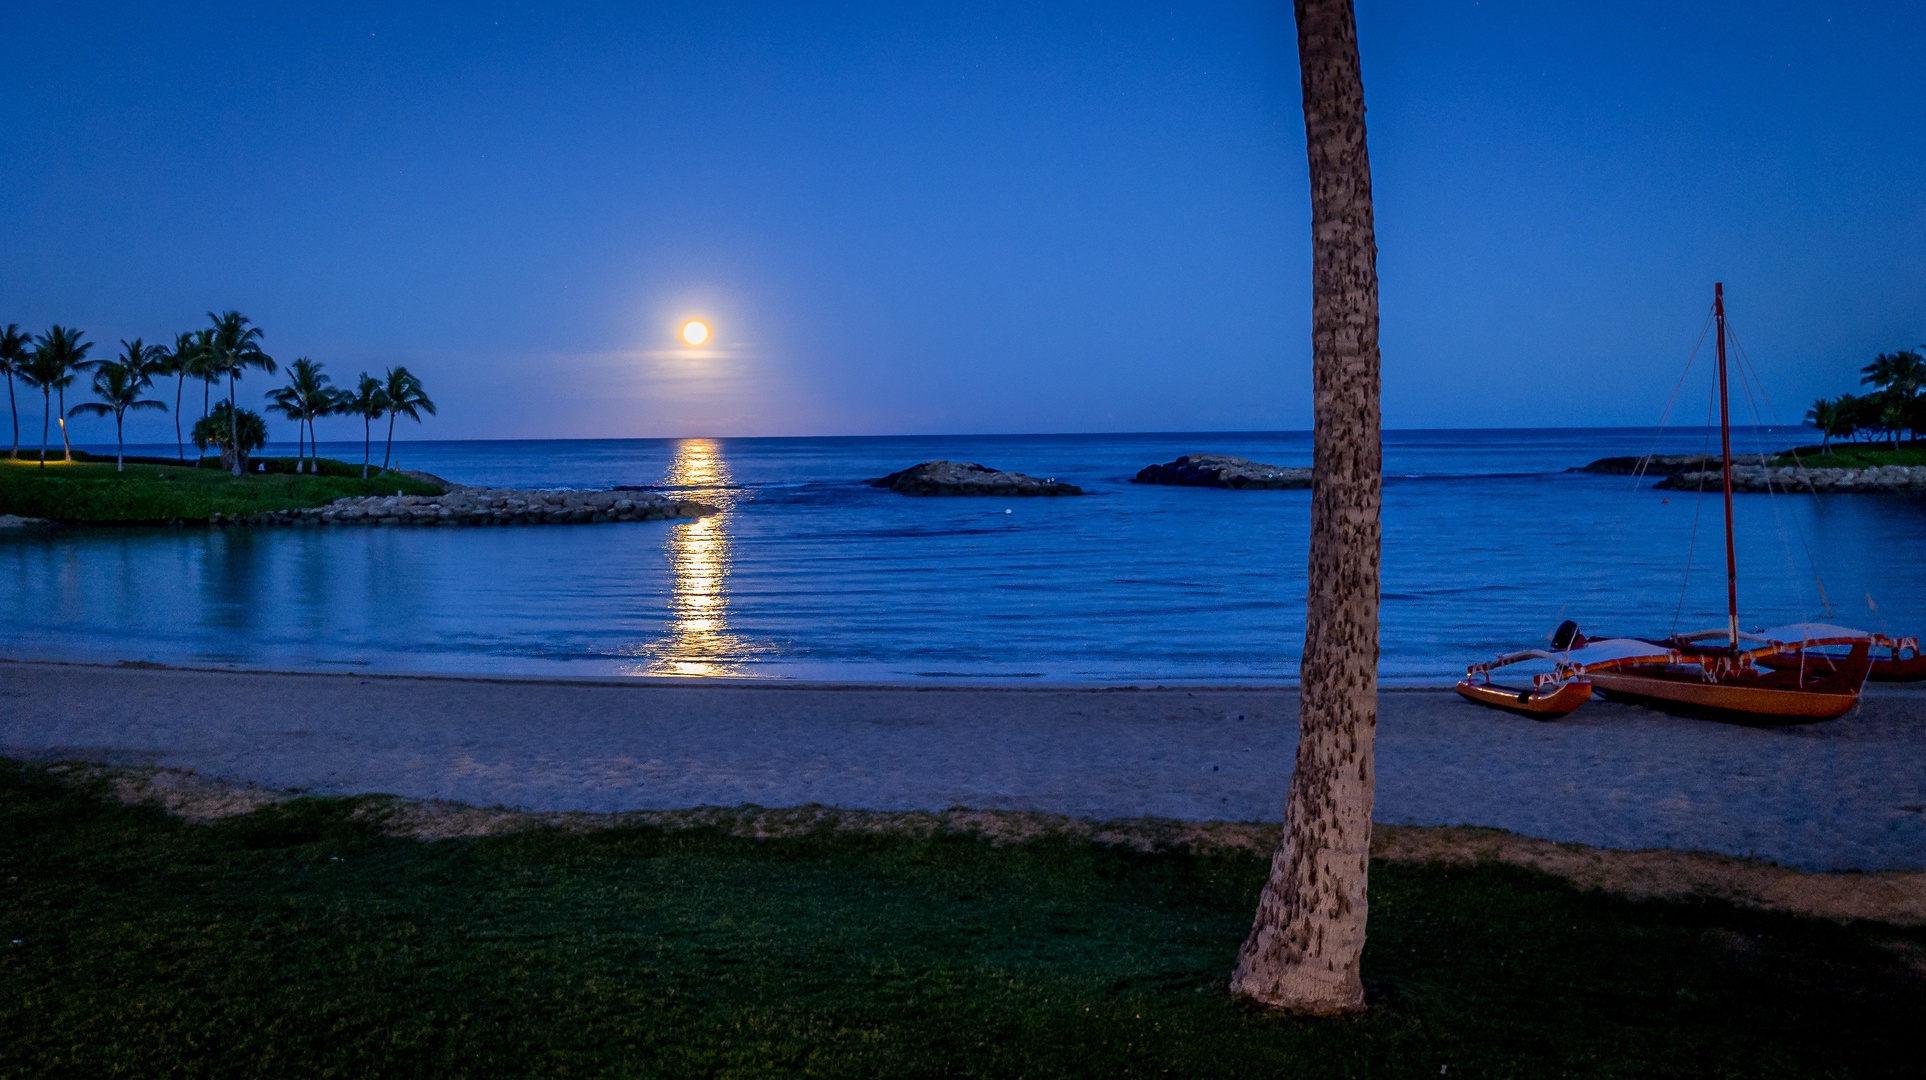 Kapolei Vacation Rentals, Kai Lani 21C - The night moon over still waters.